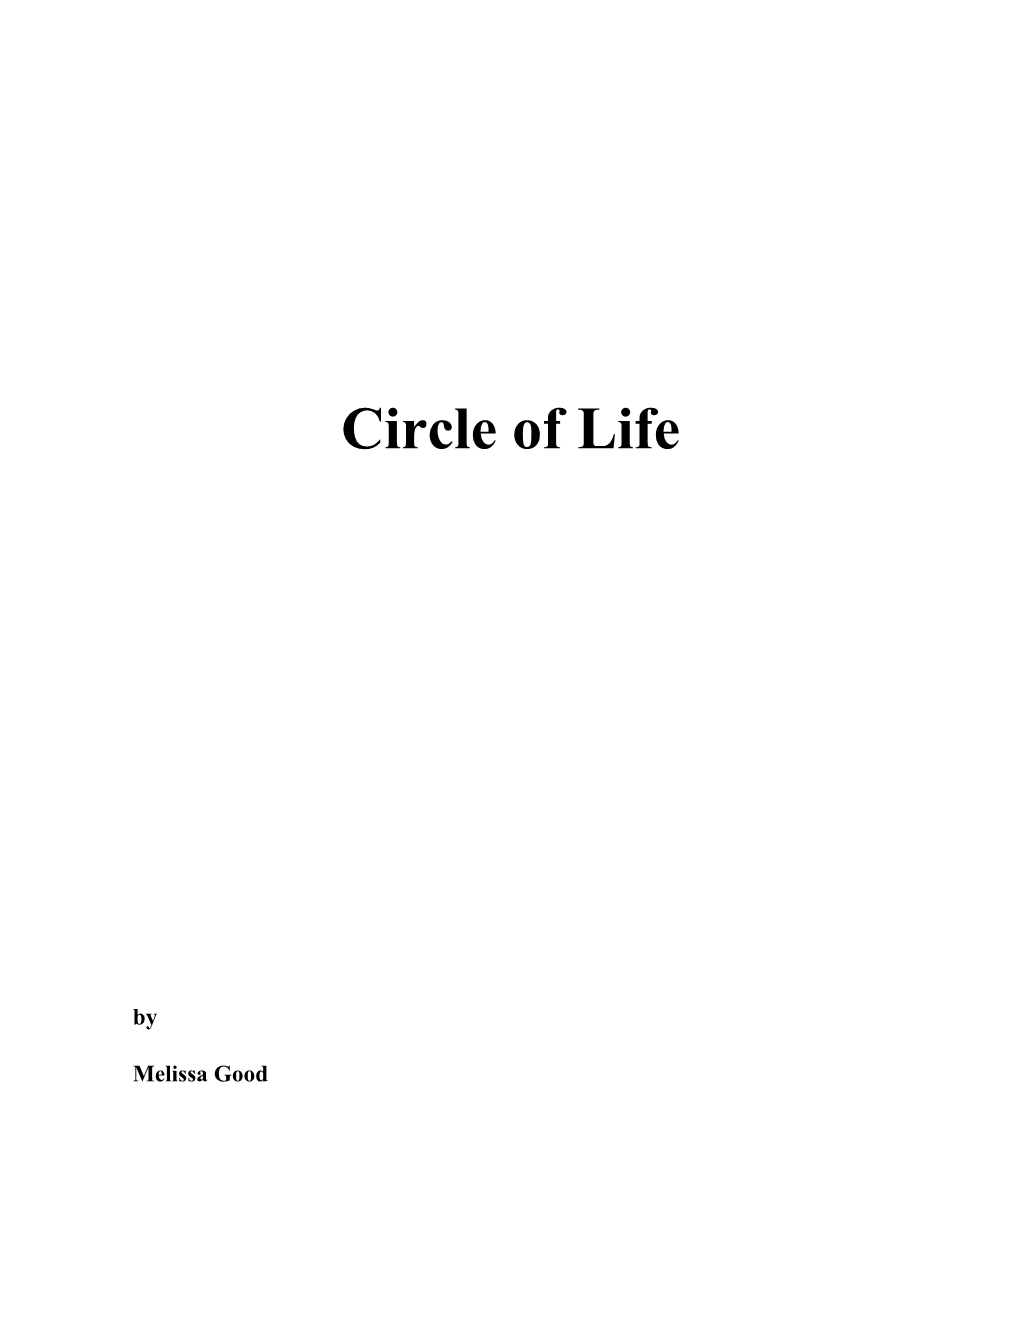 Circle of Life - Melissa Goodprinted: 11/17/18